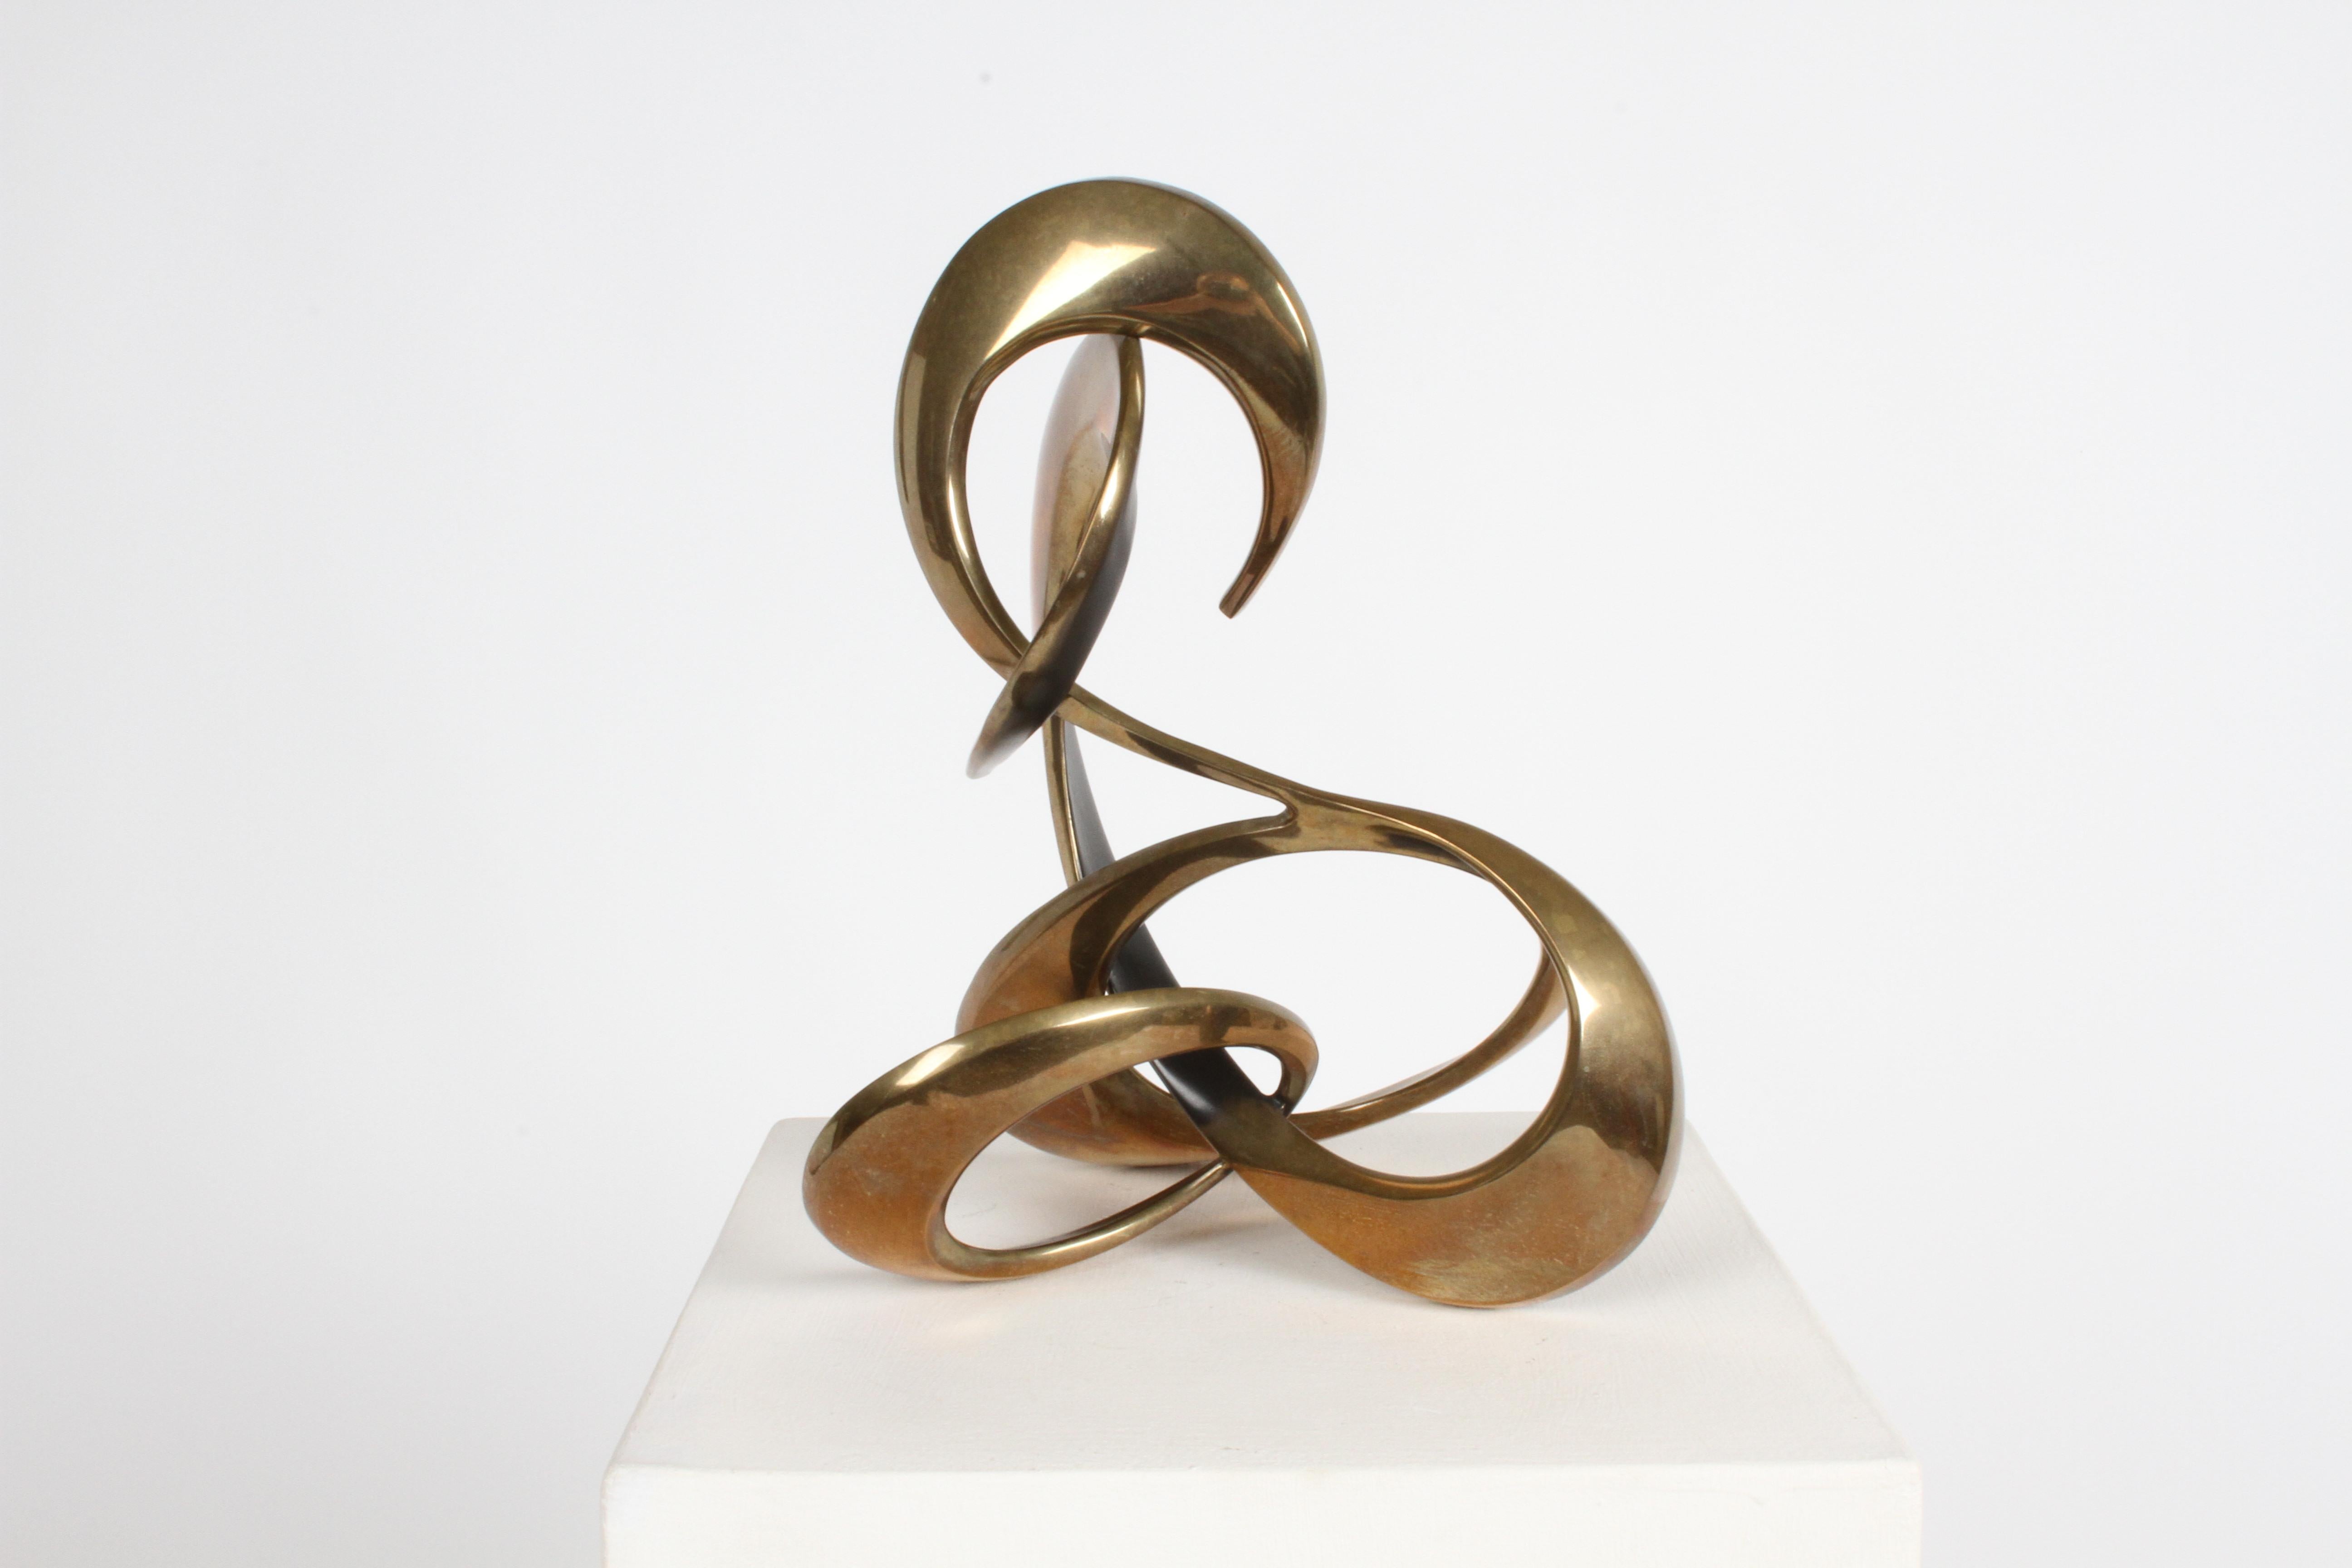 American Modernist 80s Bronze Abstract Free Form Sculpture by Artist Bob Bennett #80/100